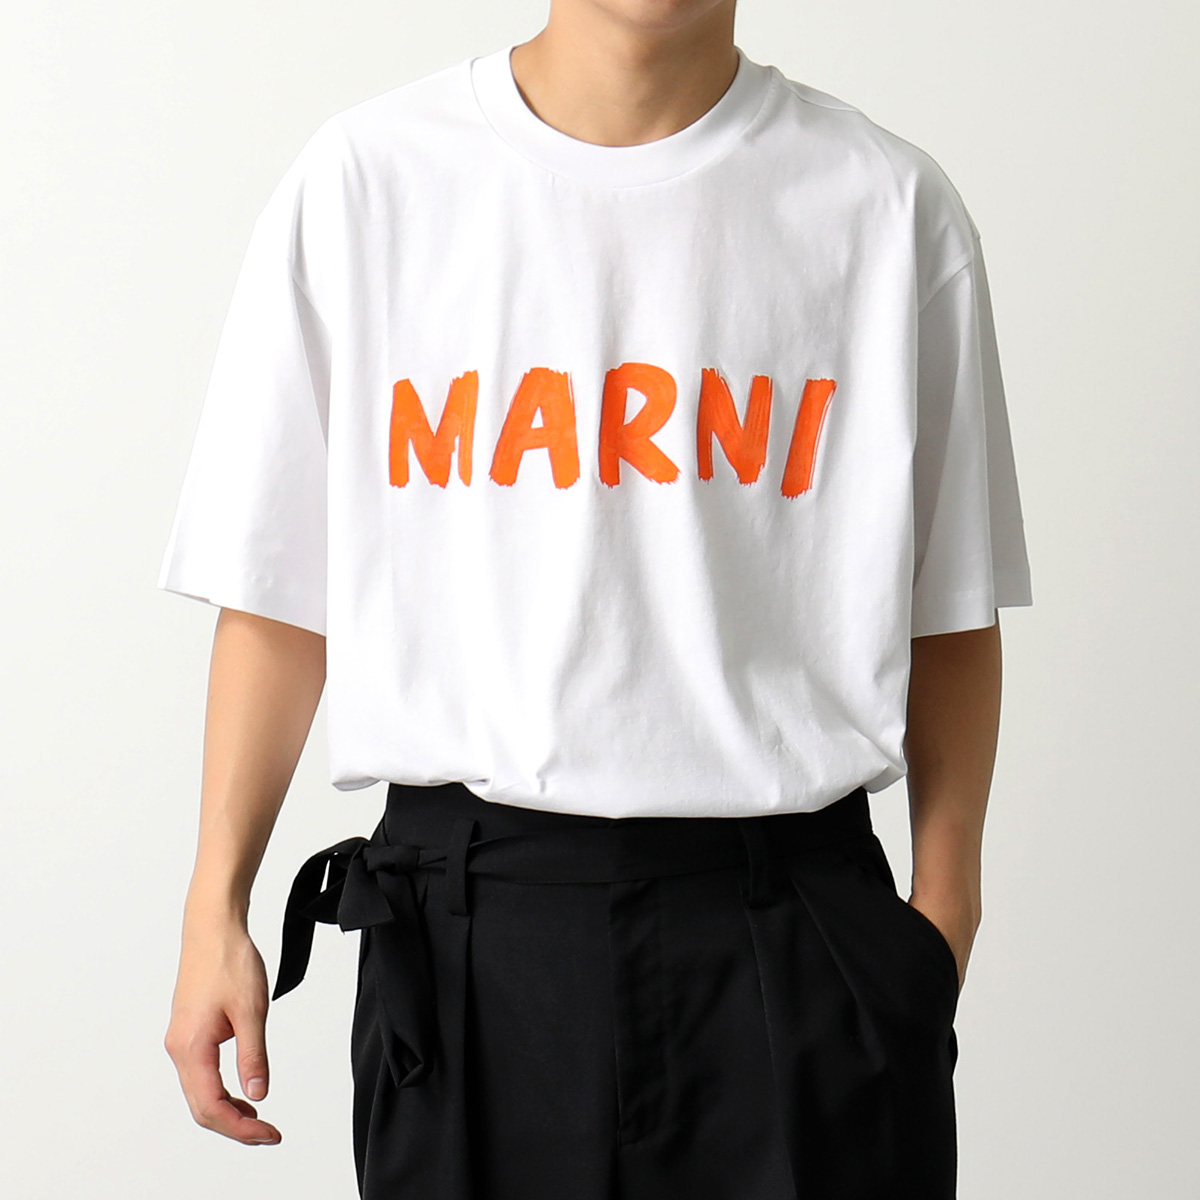 MARNI マルニ Tシャツ THJET49EPH USCS11 メンズ マルニレタリングプリント ミドルスリーブ クルーネック オーバーサイズ 半袖  カットソー ロゴT カラー9色